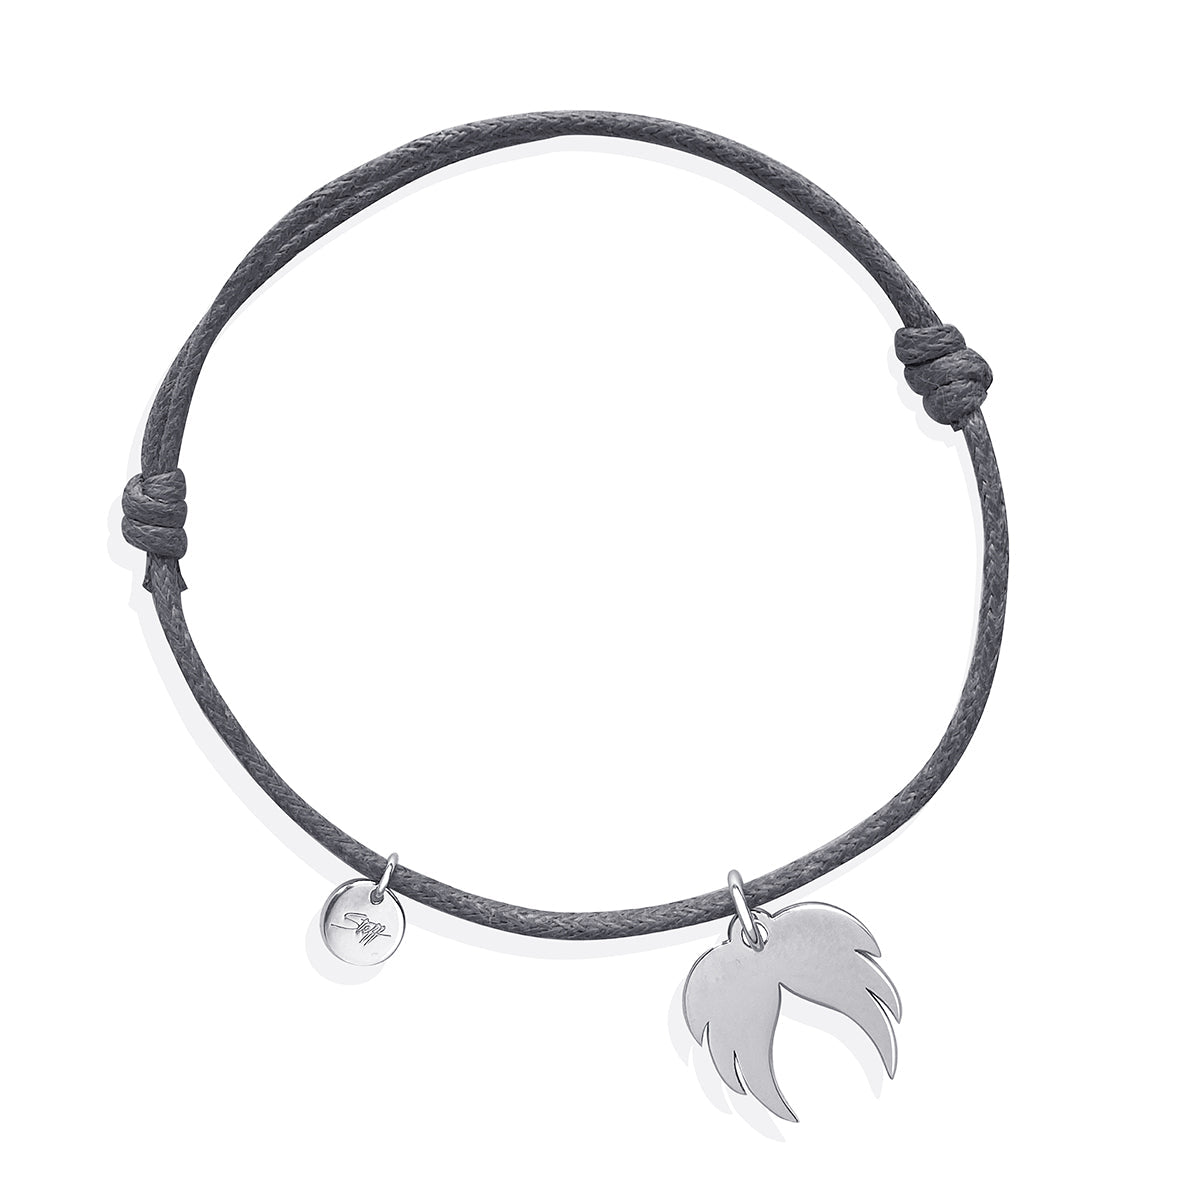 Steff Friendship Bracelets with Guardian Angel Wings Charm - Steffans Jewellers